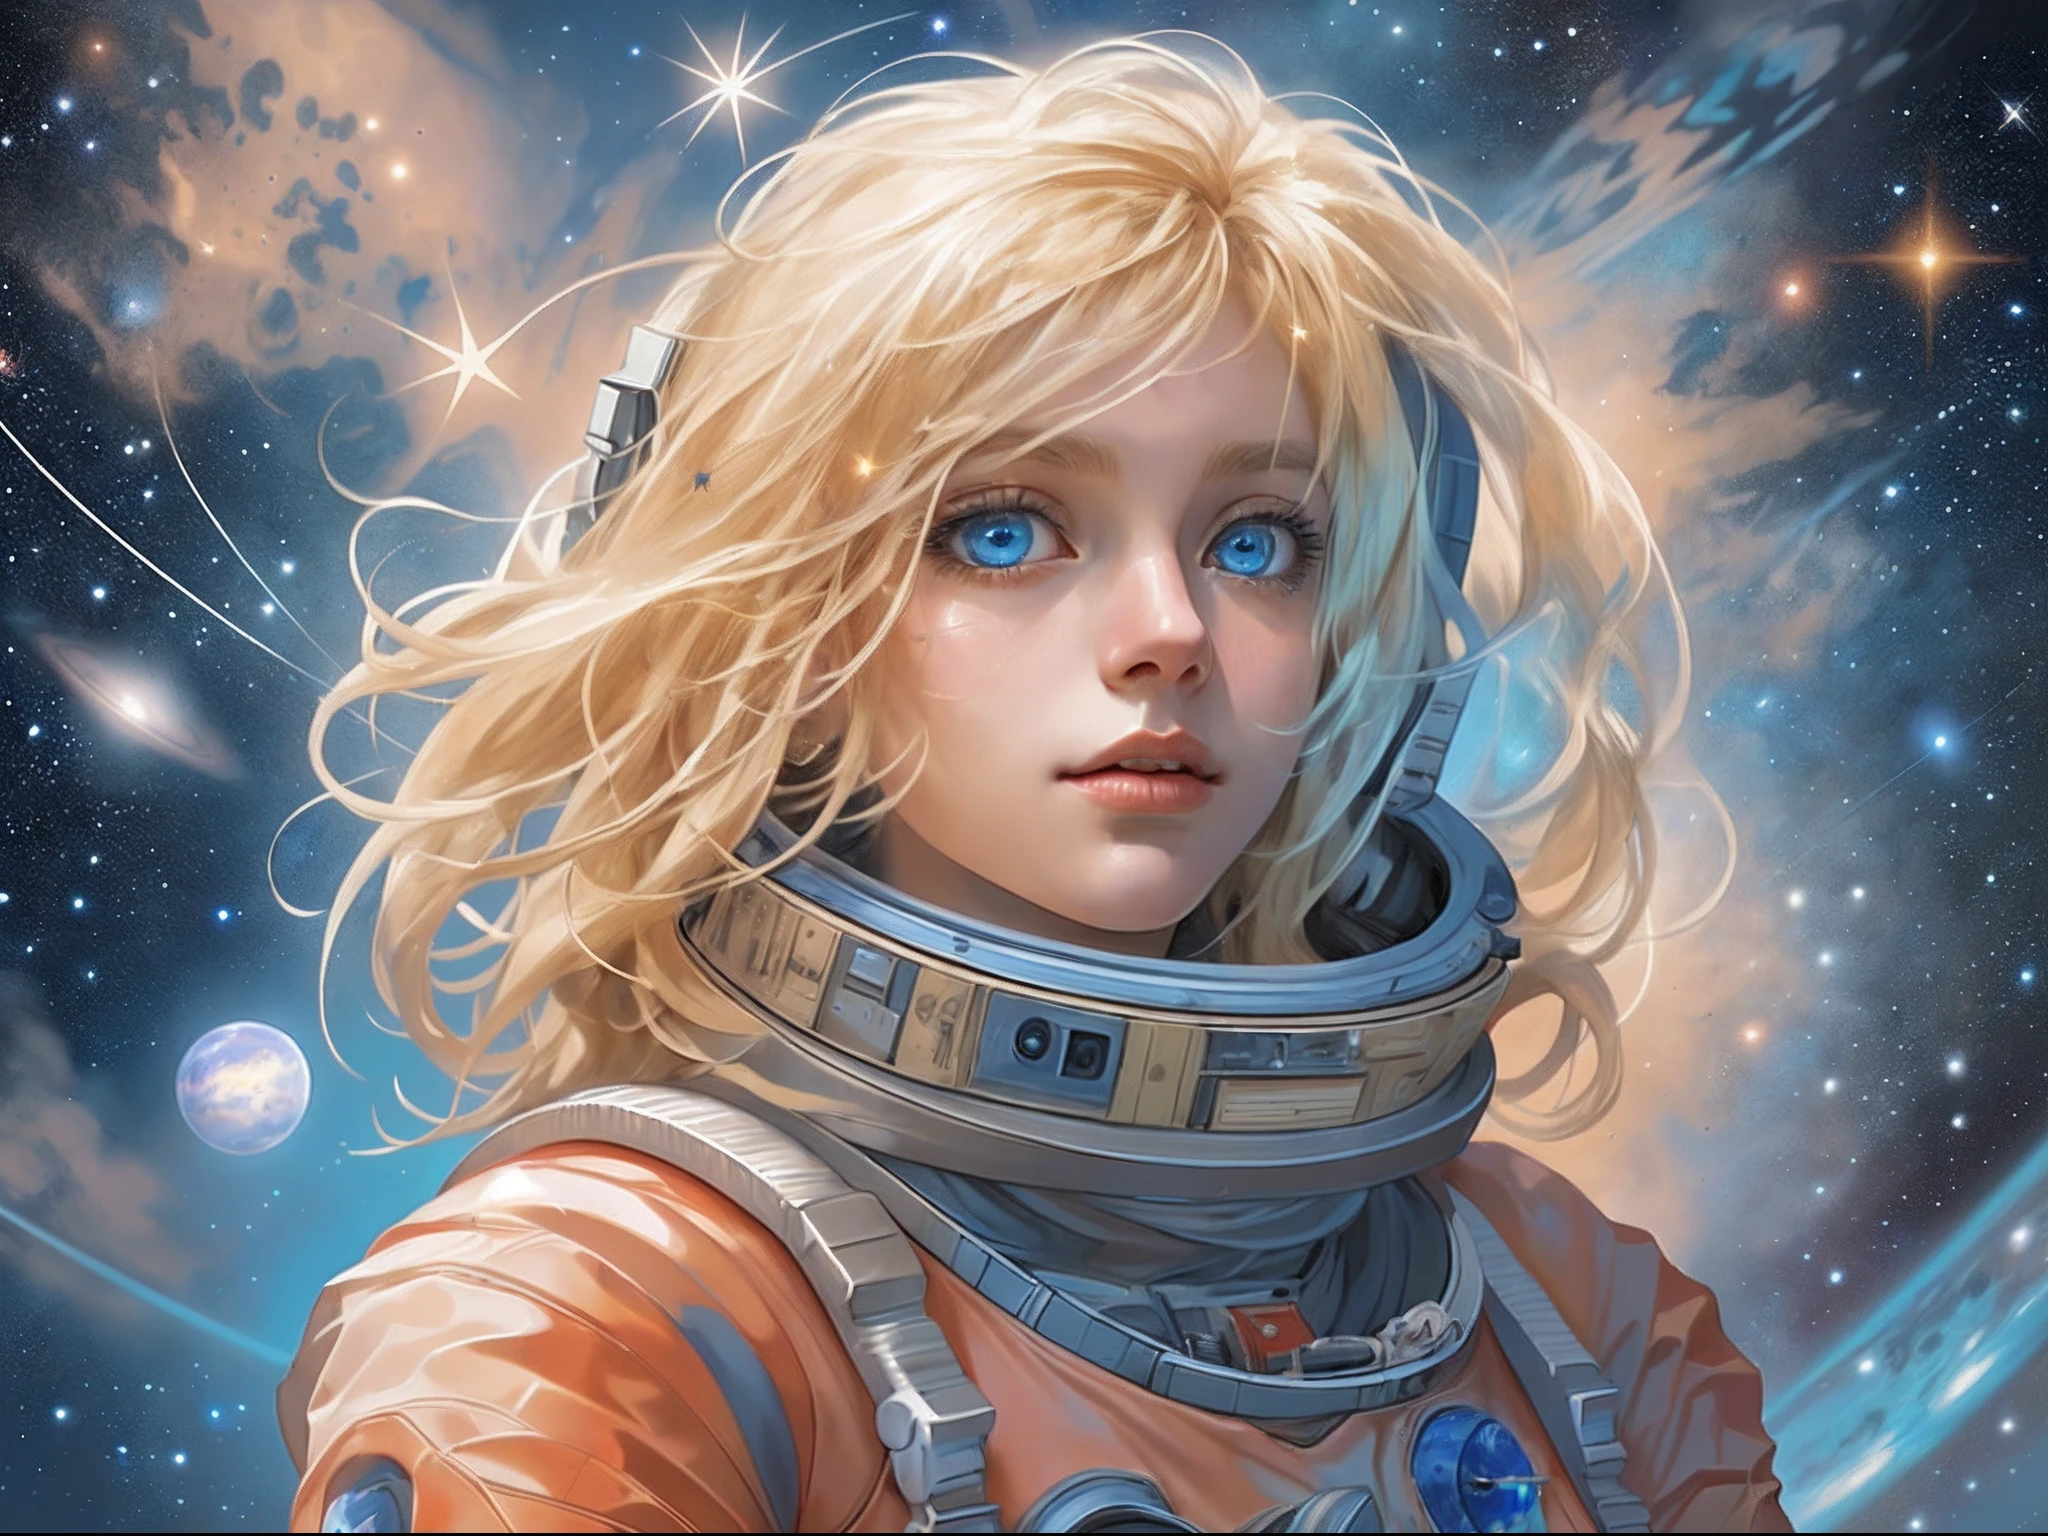 Es gibt eine Illustration eines Märchen-Astronauten, der auf dem Mars steht und in den Weltraum blickt und die Weite der Sterne und des Weltraums sieht, blondes Haar, lange Haare, blaue Augen, ultradetailliertes Gesicht, Weltraum und Sterne als Hintergrund, Gefühl der Unendlichkeit,